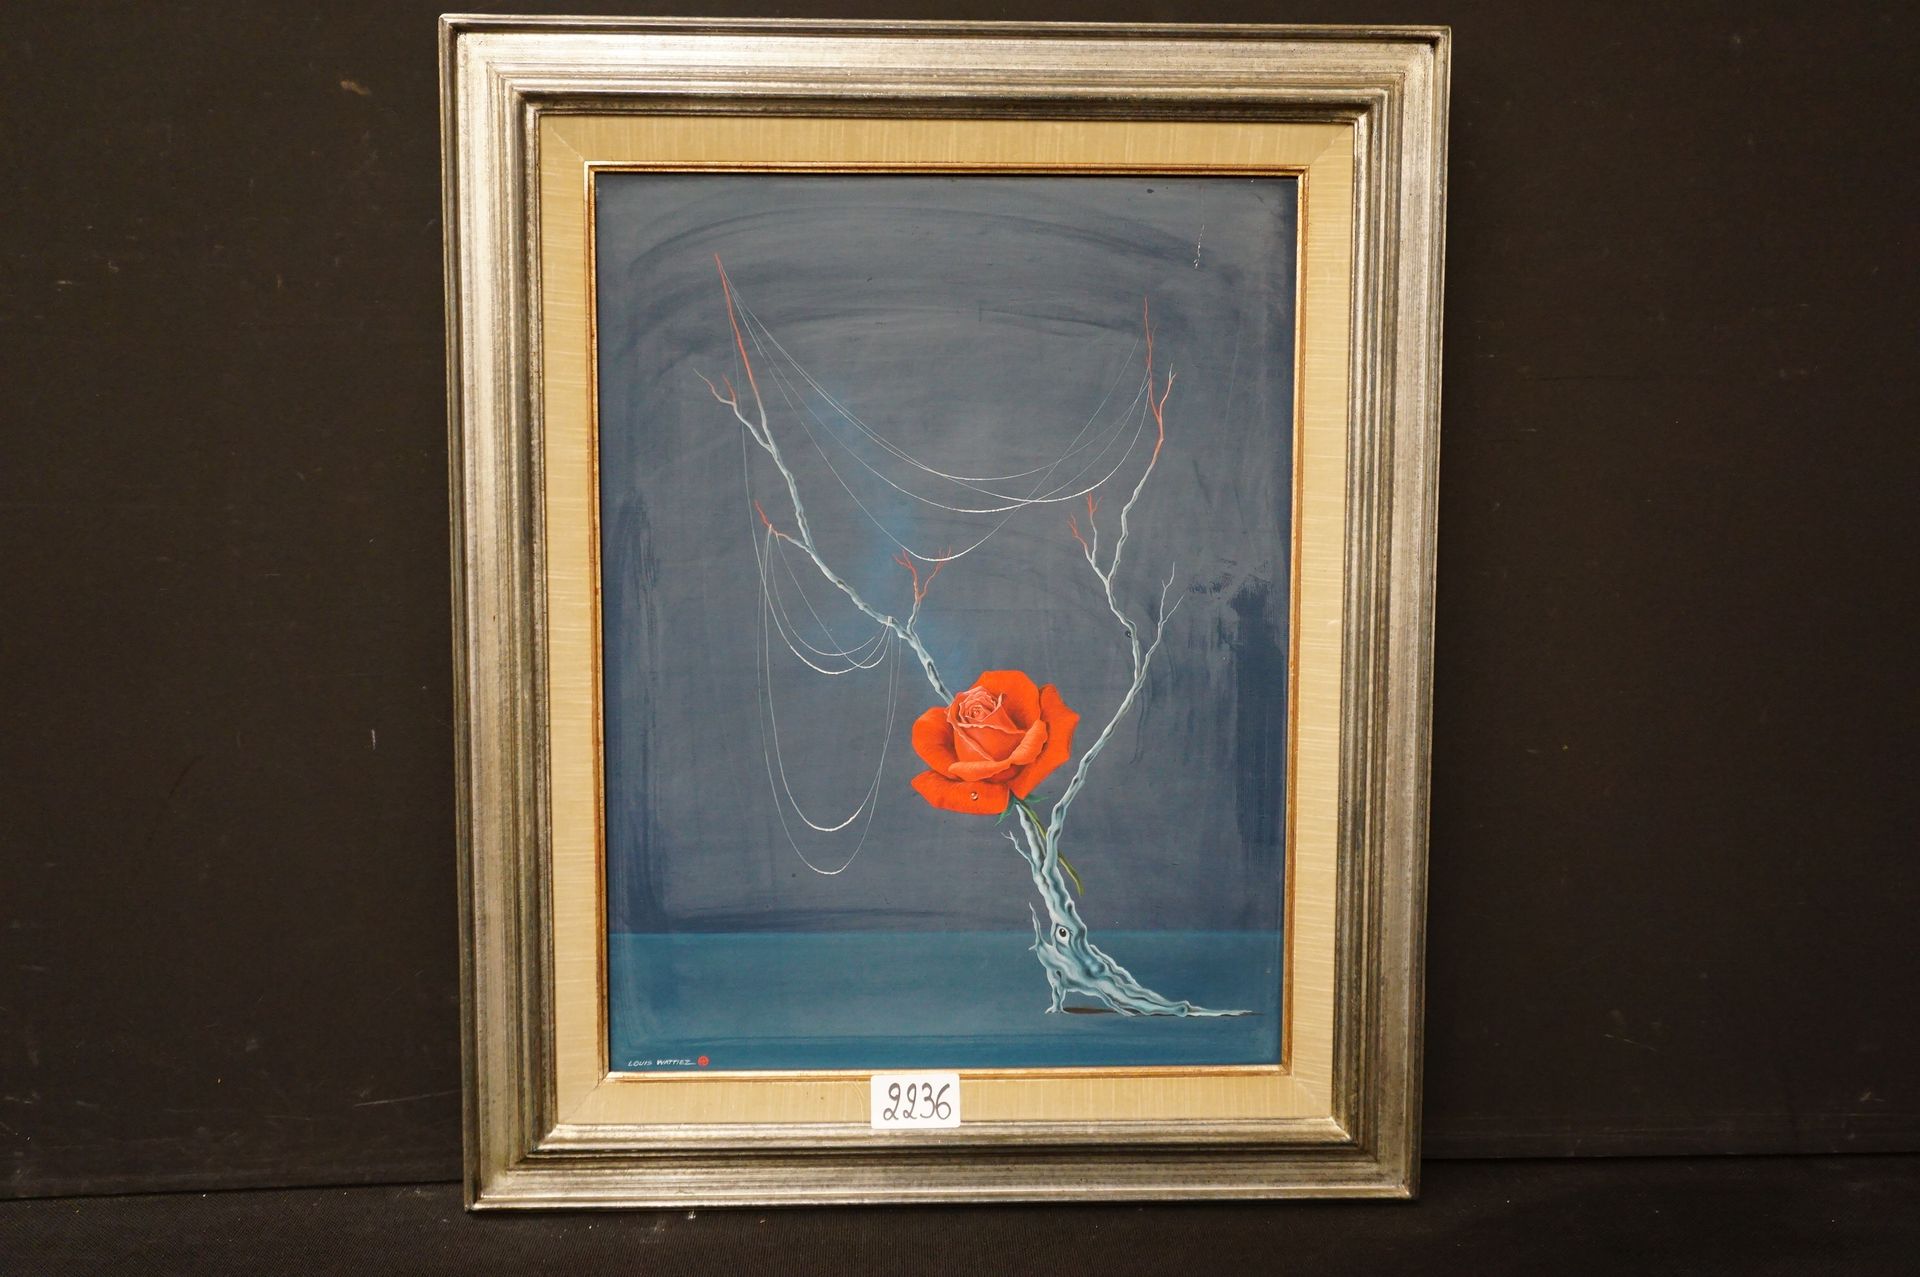 LOUIS WATTIEZ "La rose" - Huile sur toile - Signé - 65 x 50 cm